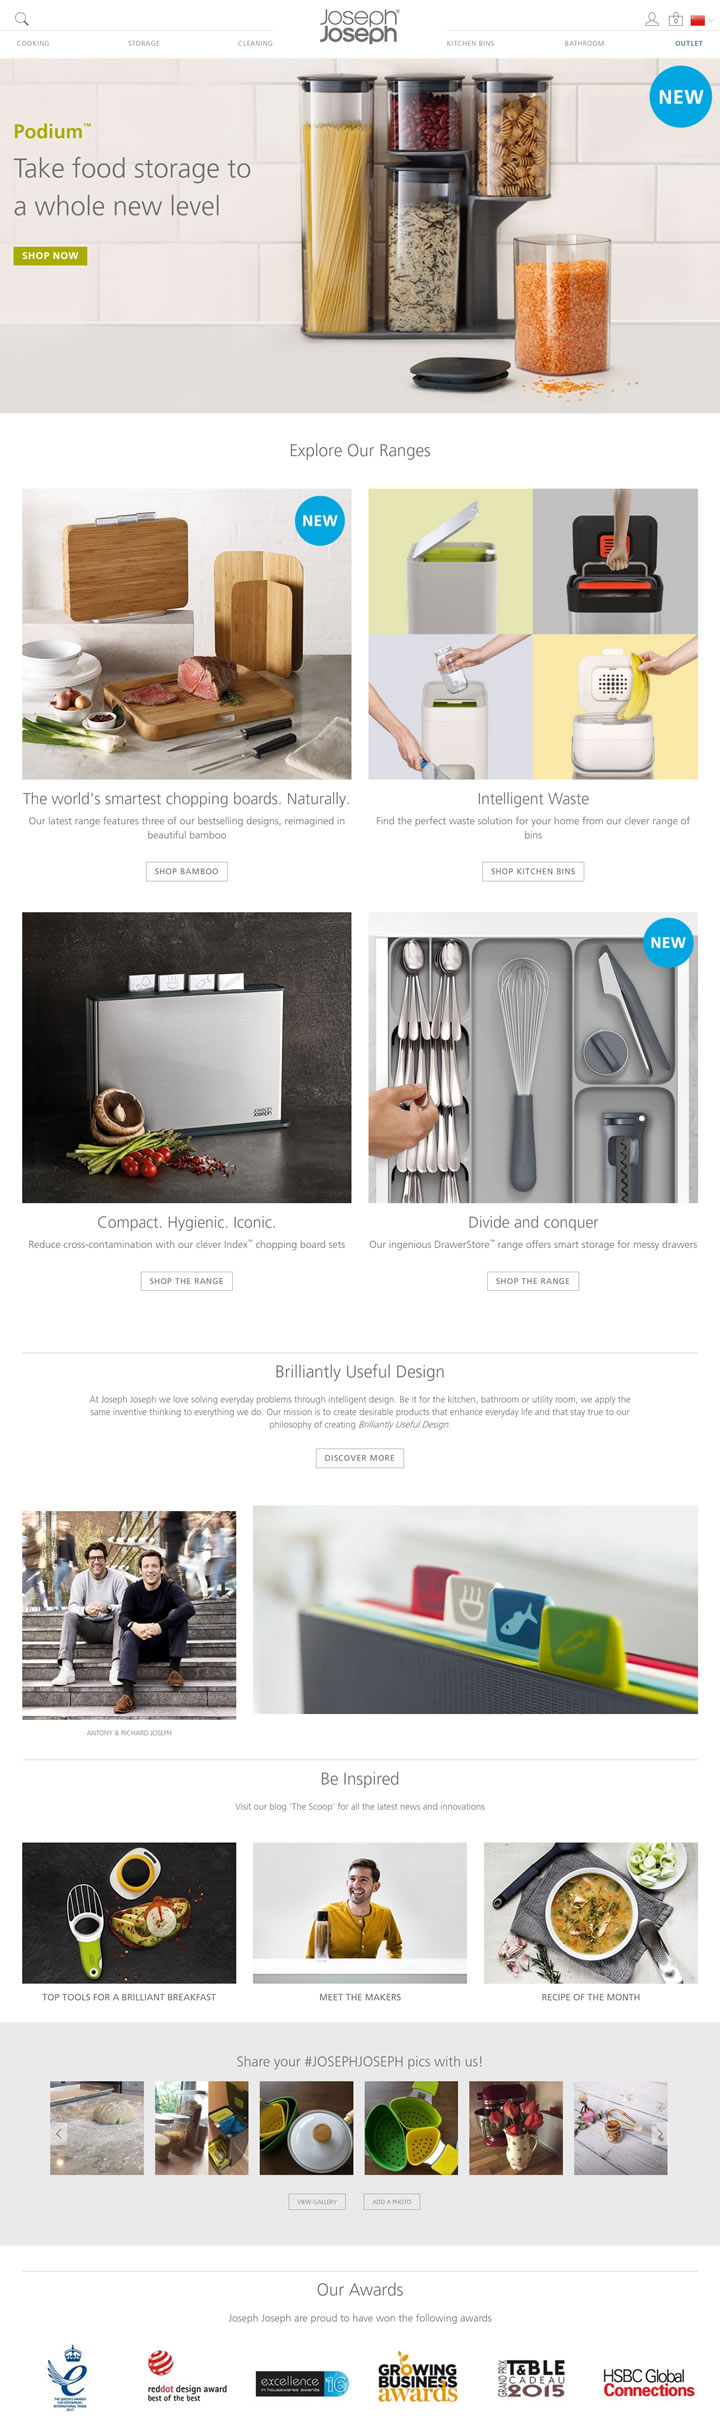 英國廚房與餐具用品為主的設計品牌：Joseph Joseph 英國購物網站 MeetKK-MeetKK